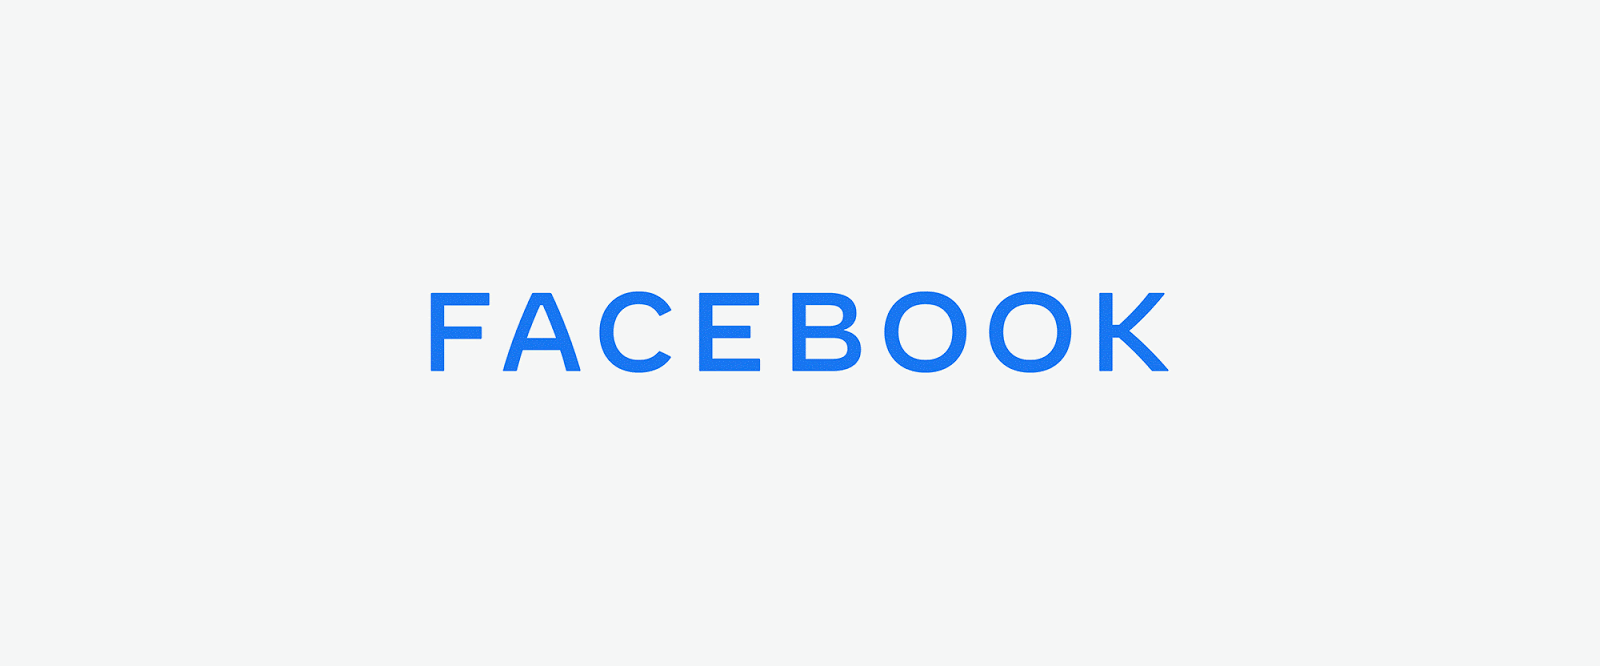 Facebook New Logo 2019